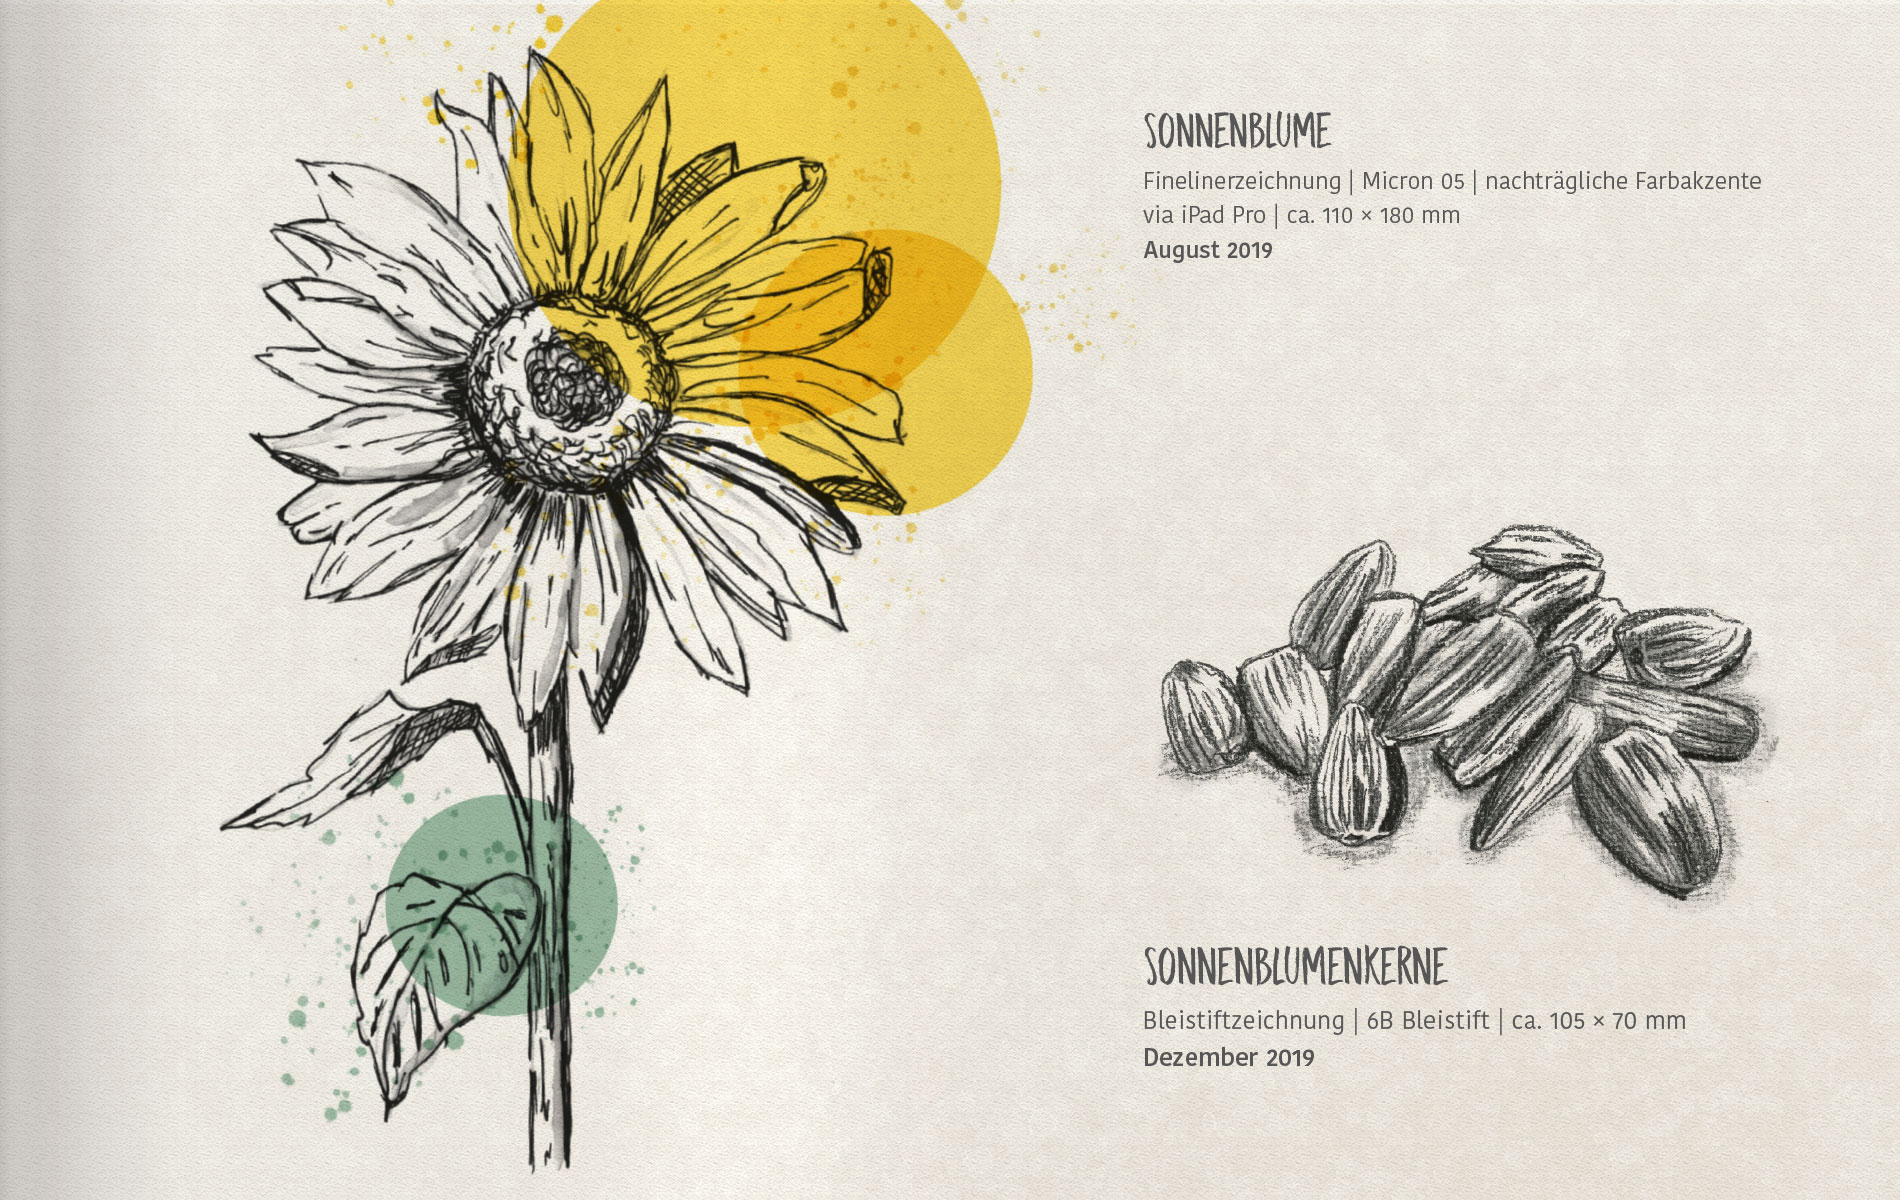 Sonnenblume in Finelinerzeichnung, Sonnenblumenkerne in Bleistiftzeichnung